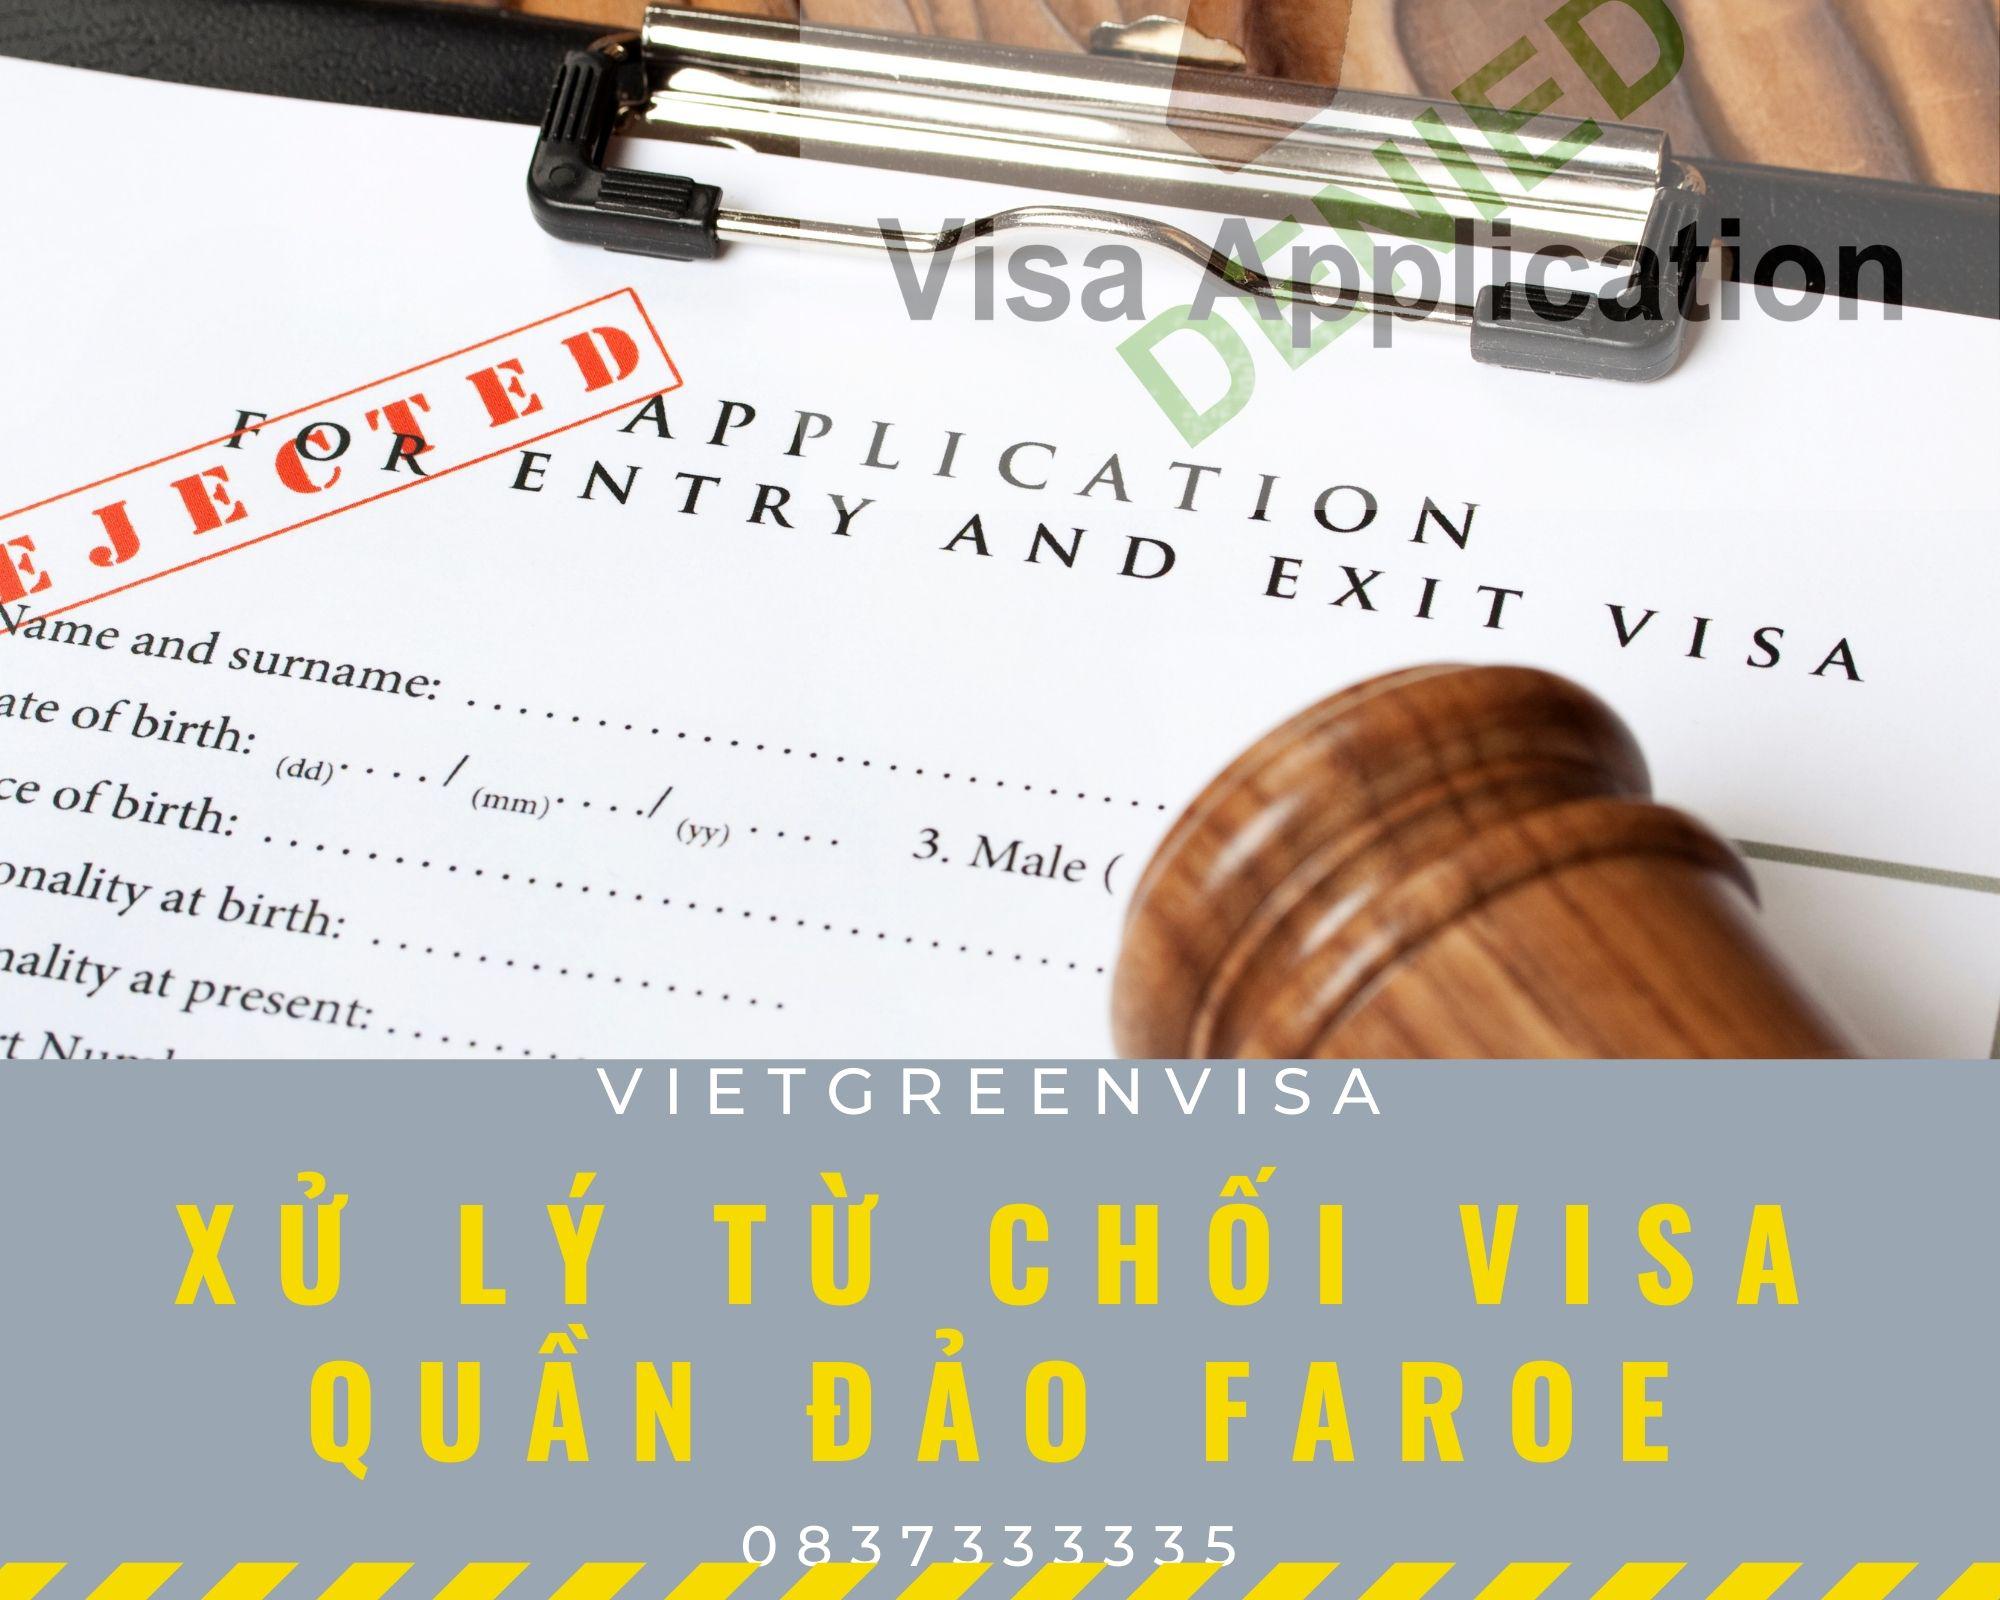 Hỗ trợ xử lý visa Faroe bị từ chối nhanh gọn